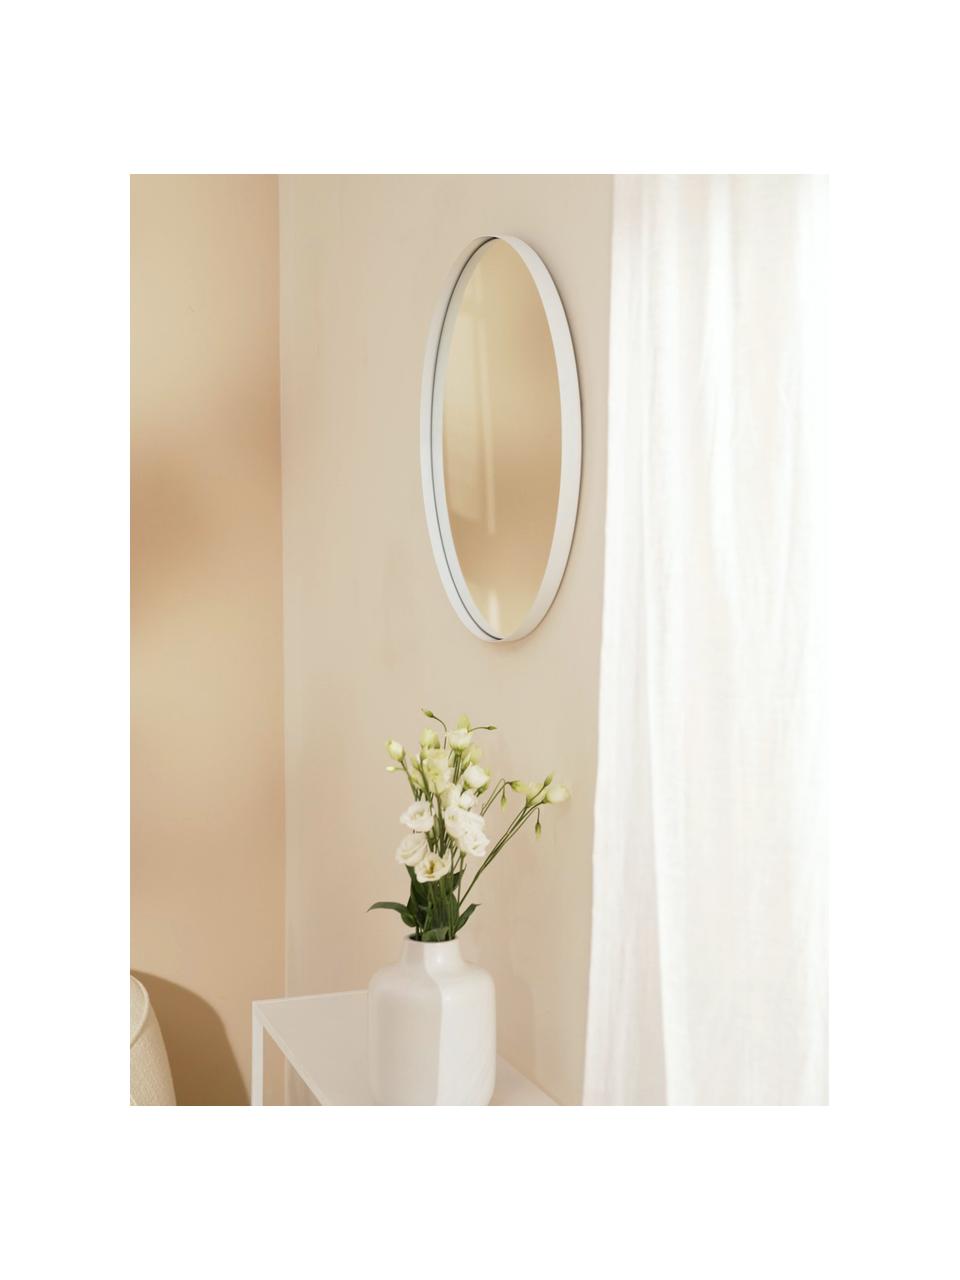 Runder Wandspiegel Ivy mit weißem Metallrahmen, Rahmen: Metall, pulverbeschichtet, Rückseite: Mitteldichte Holzfaserpla, Spiegelfläche: Spiegelglas, Weiß, Ø 40 x T 3 cm